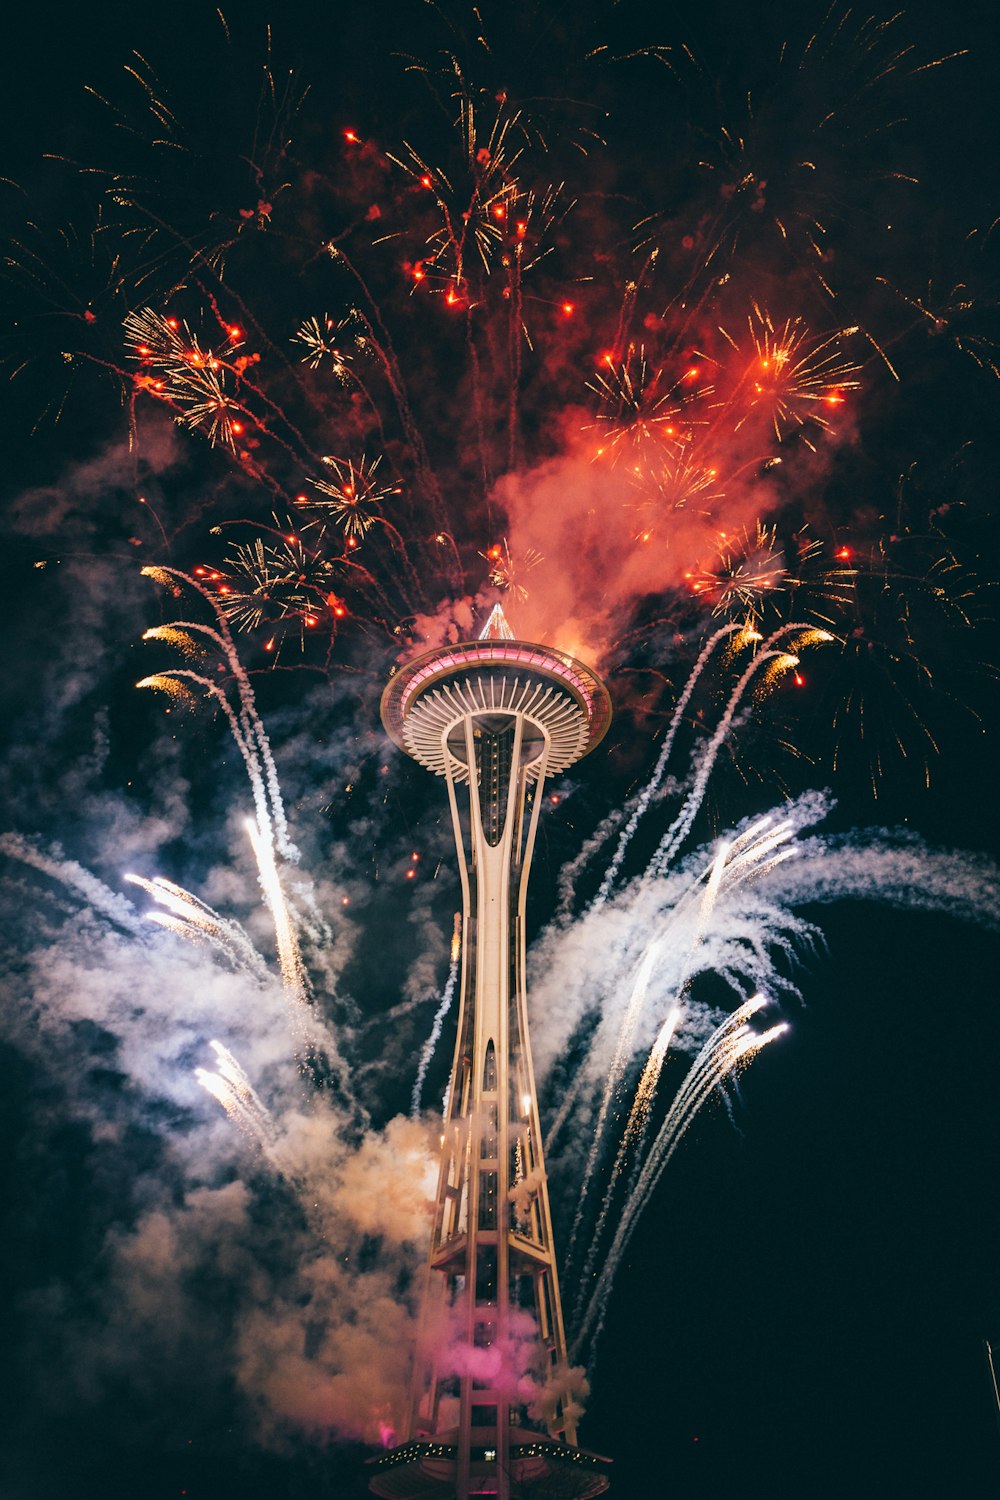 Space Needle, Seattle umgeben von Feuerwerk